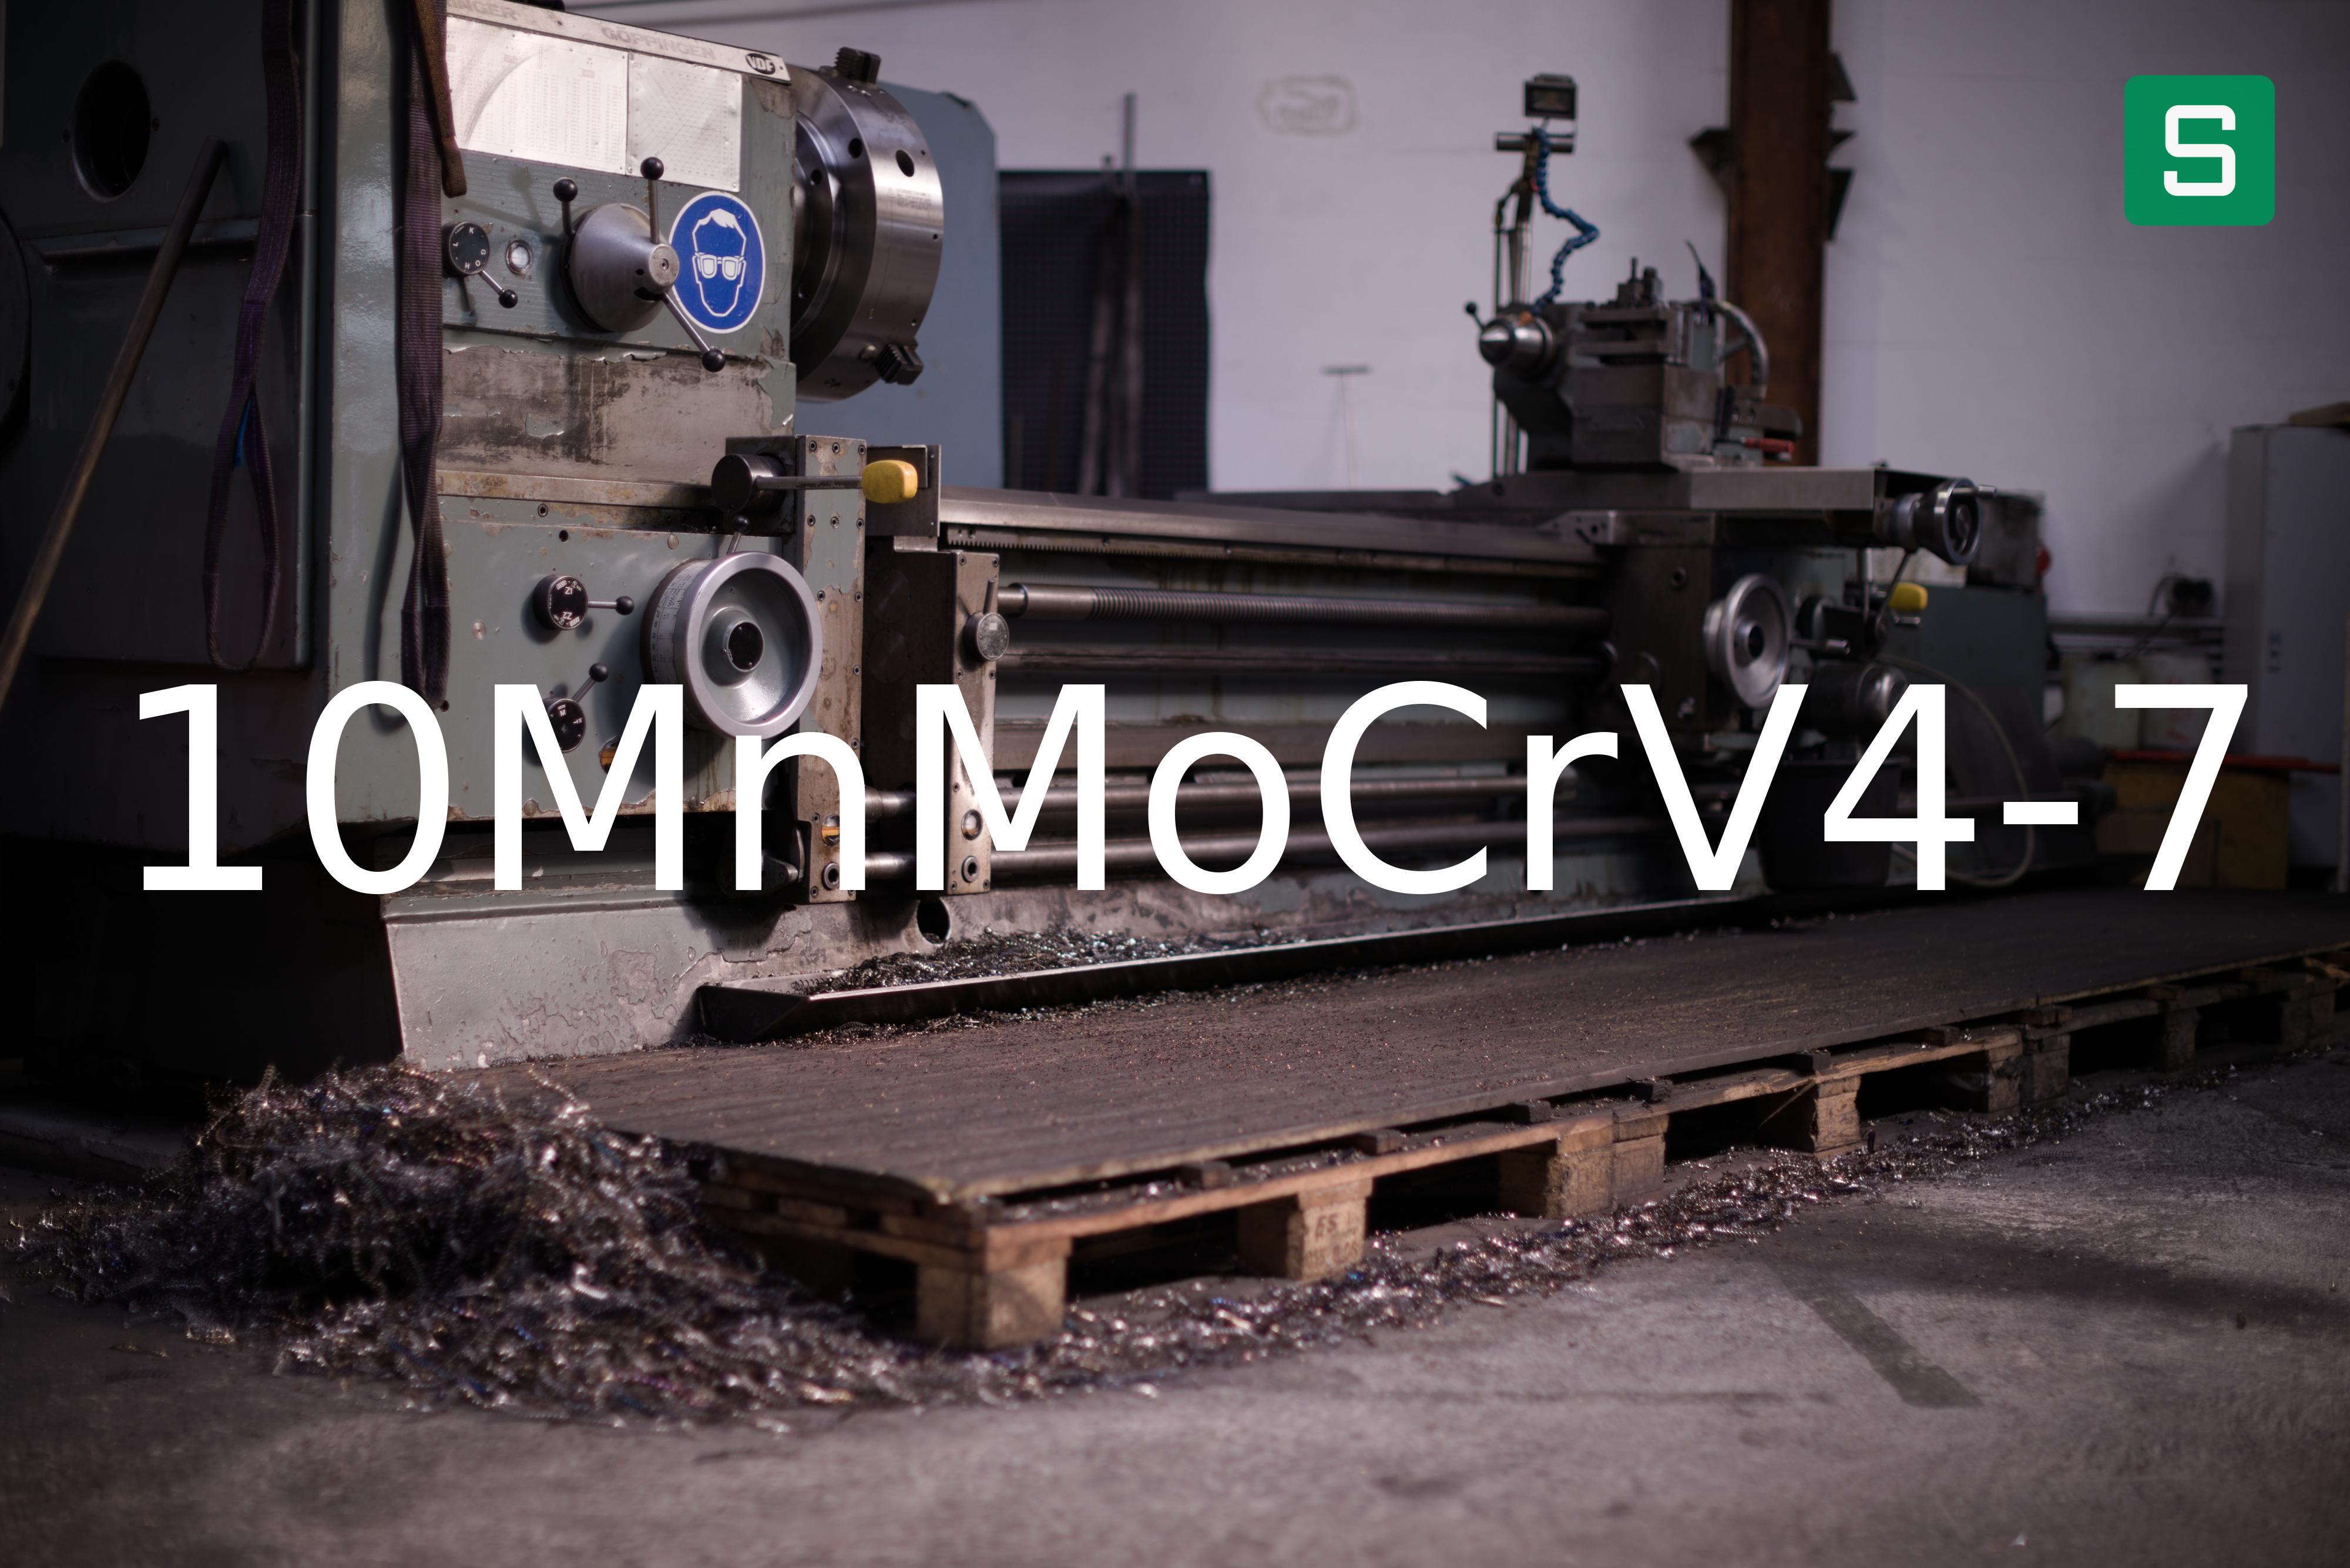 Stahlwerkstoff: 10MnMoCrV4-7